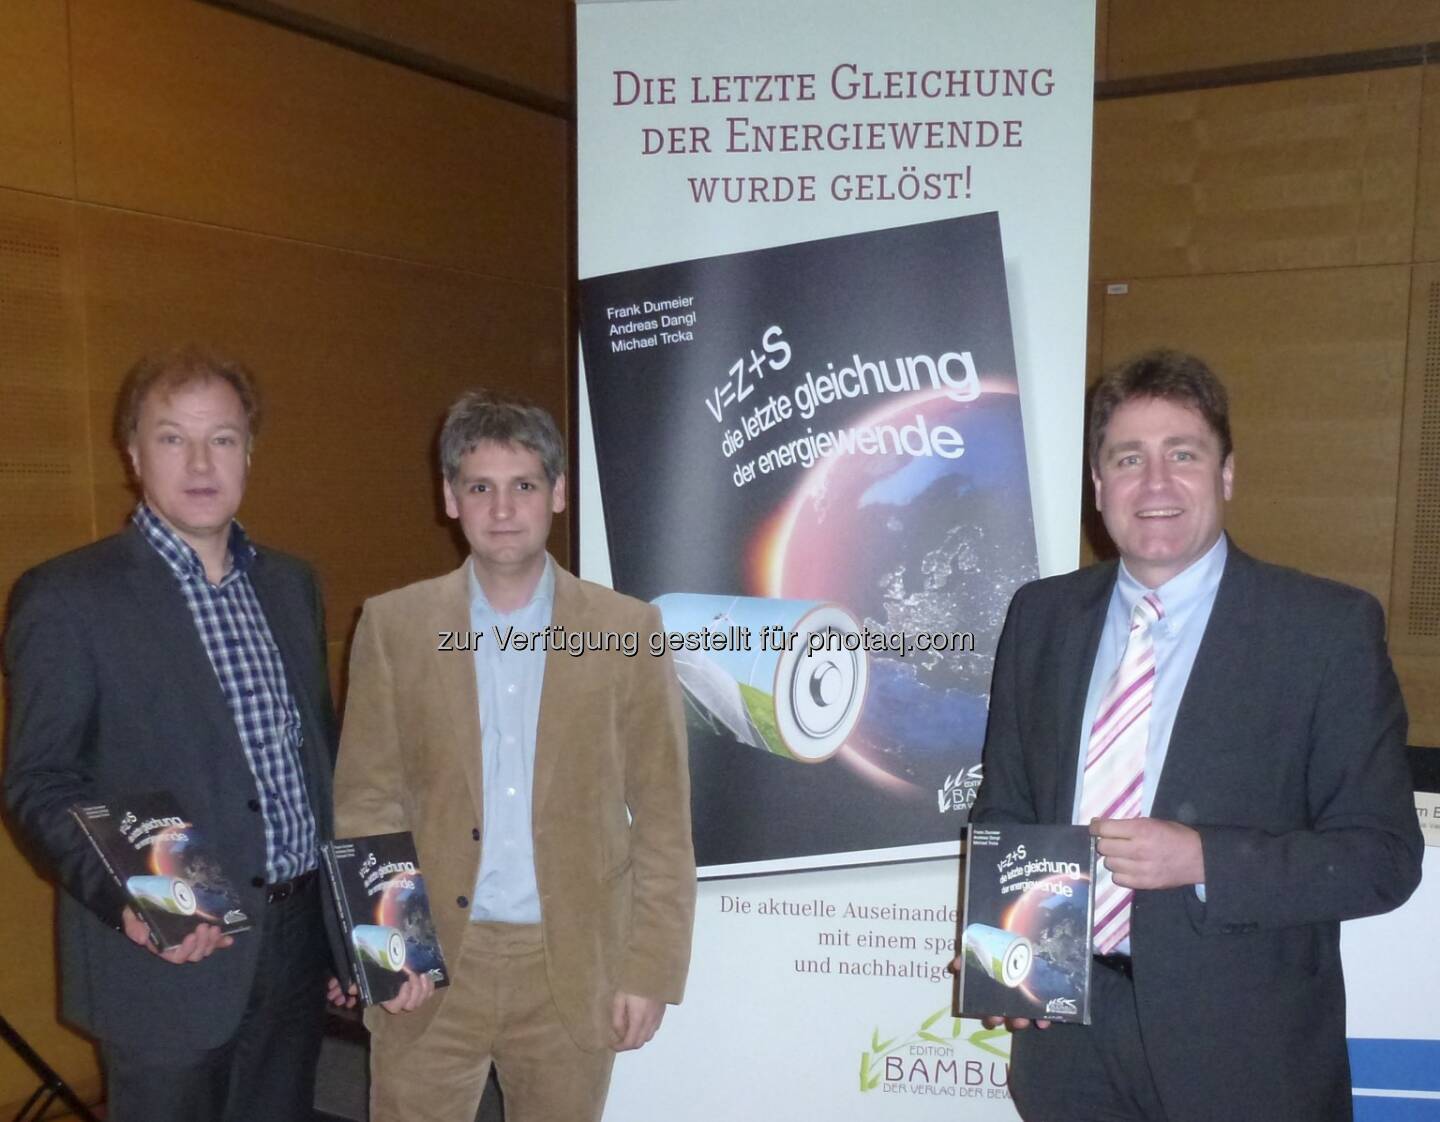 Dumeier, Dangl, Trcka stellten im Rahmen der Windenergiemesse EWEA in Wien das neue Buch V=Z+S - die letzte gleichung der energiewende vor, erschienen in der Edition Bambus (c) Aussendung